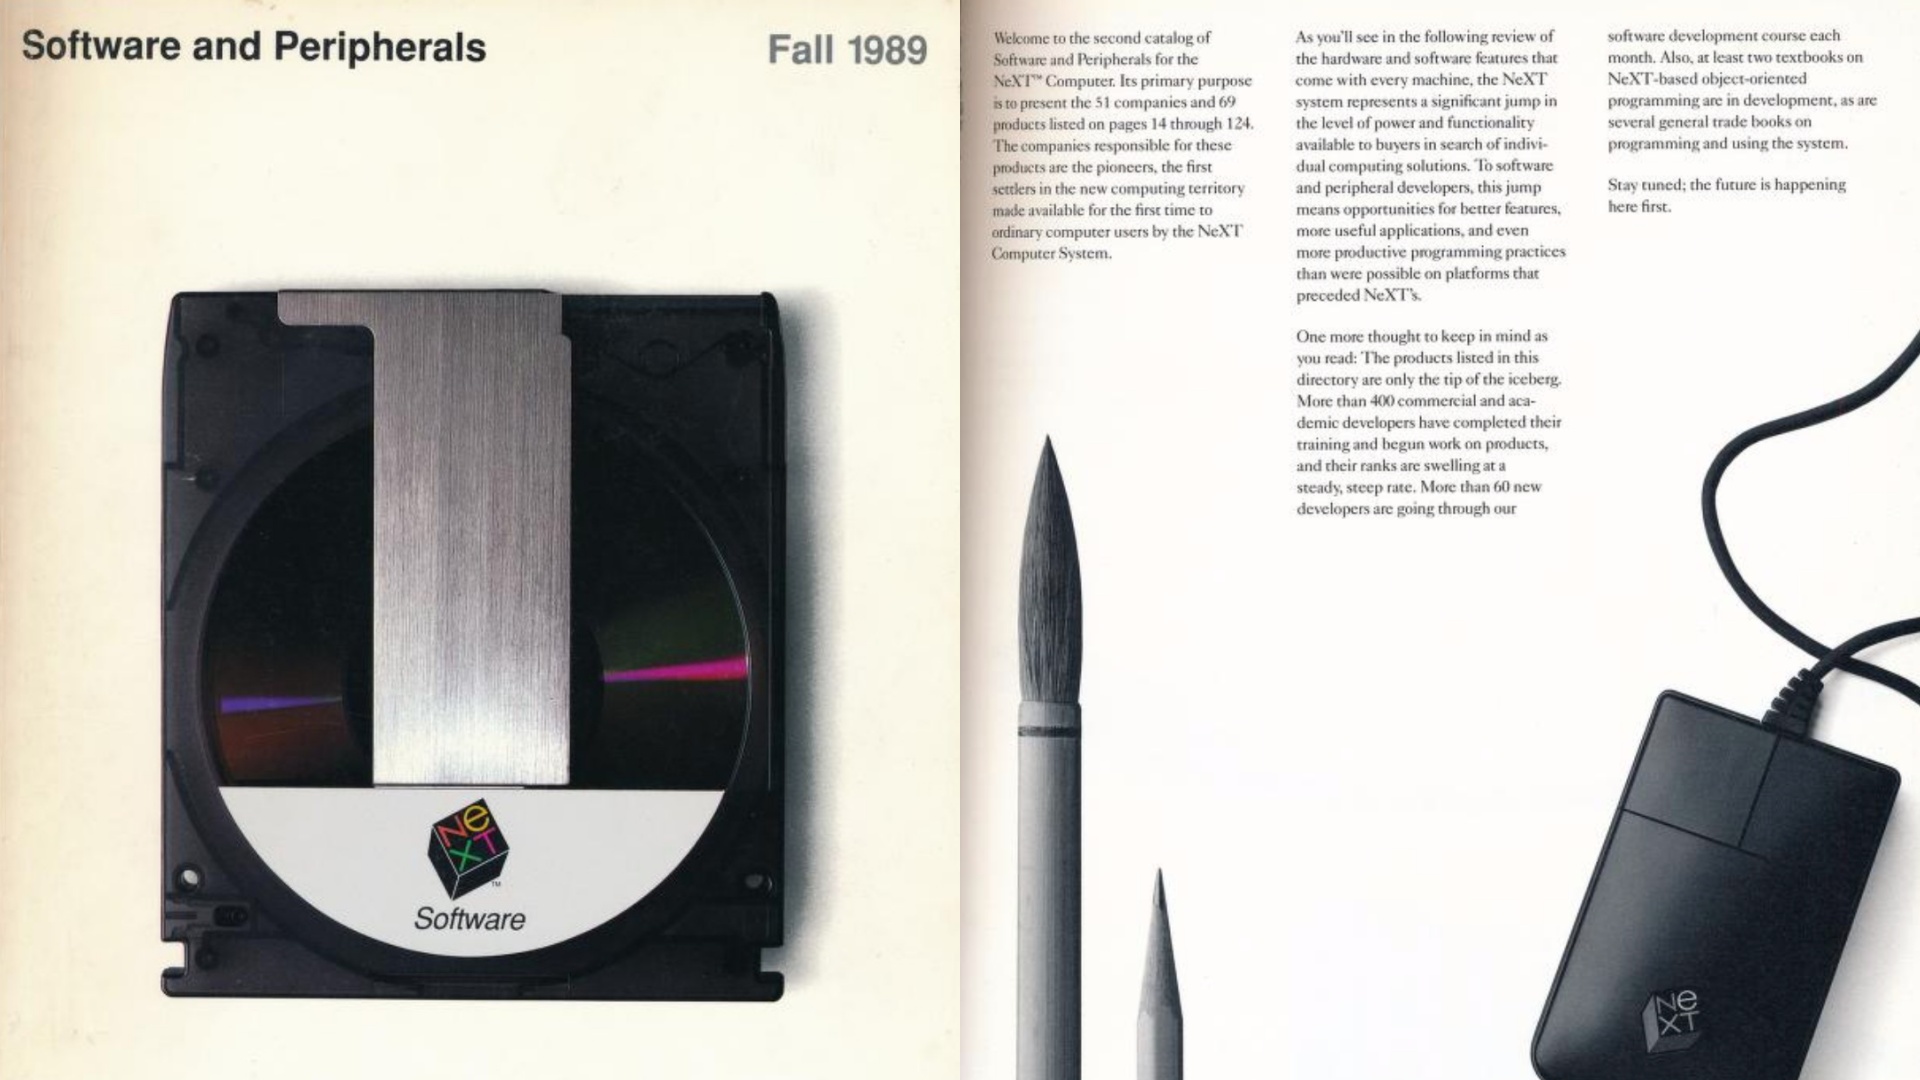 Katalog Produk Komputer NeXT Dari Tahun 1989 Kini Boleh Diakses Secara Digital